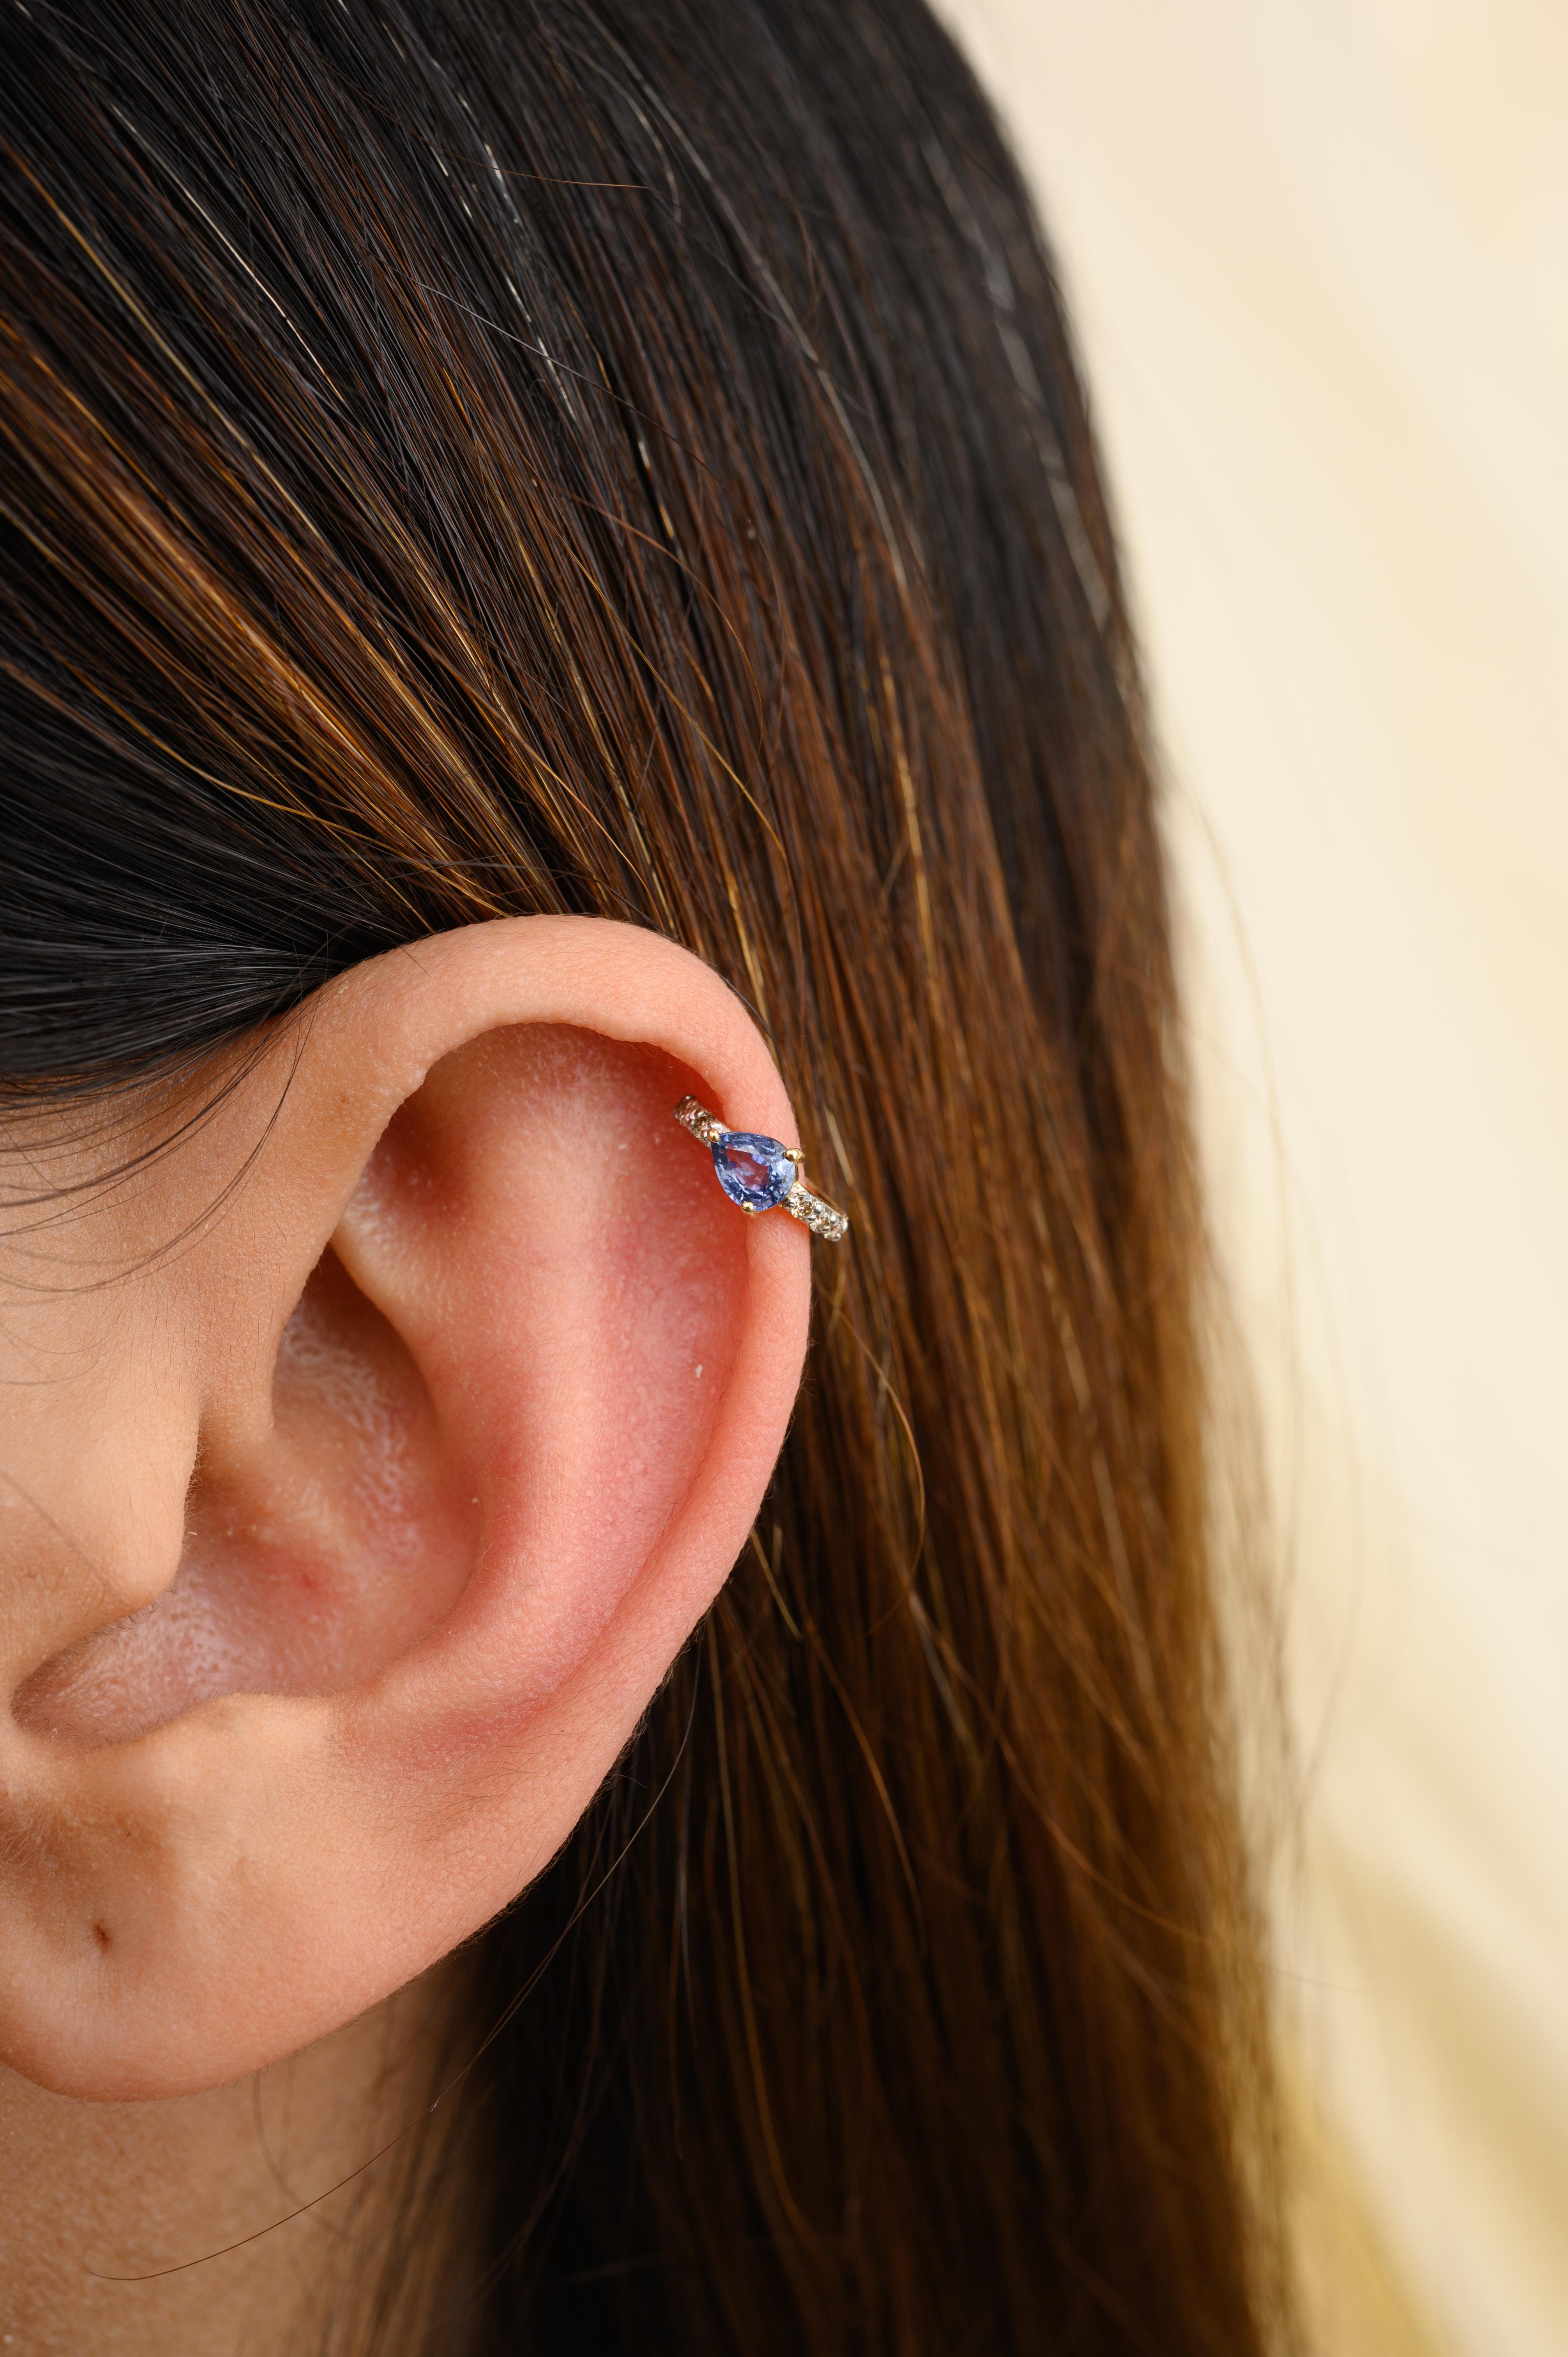 Winzige Helix-Ohrringe aus 18 Karat Gold mit blauem Saphir und Diamanten, die Ihren Look unterstreichen. Sie brauchen Helix-Ohrringe, um mit Ihrem Look ein Statement zu setzen. Diese Ohrringe mit rund geschliffenen Saphiren sorgen für einen